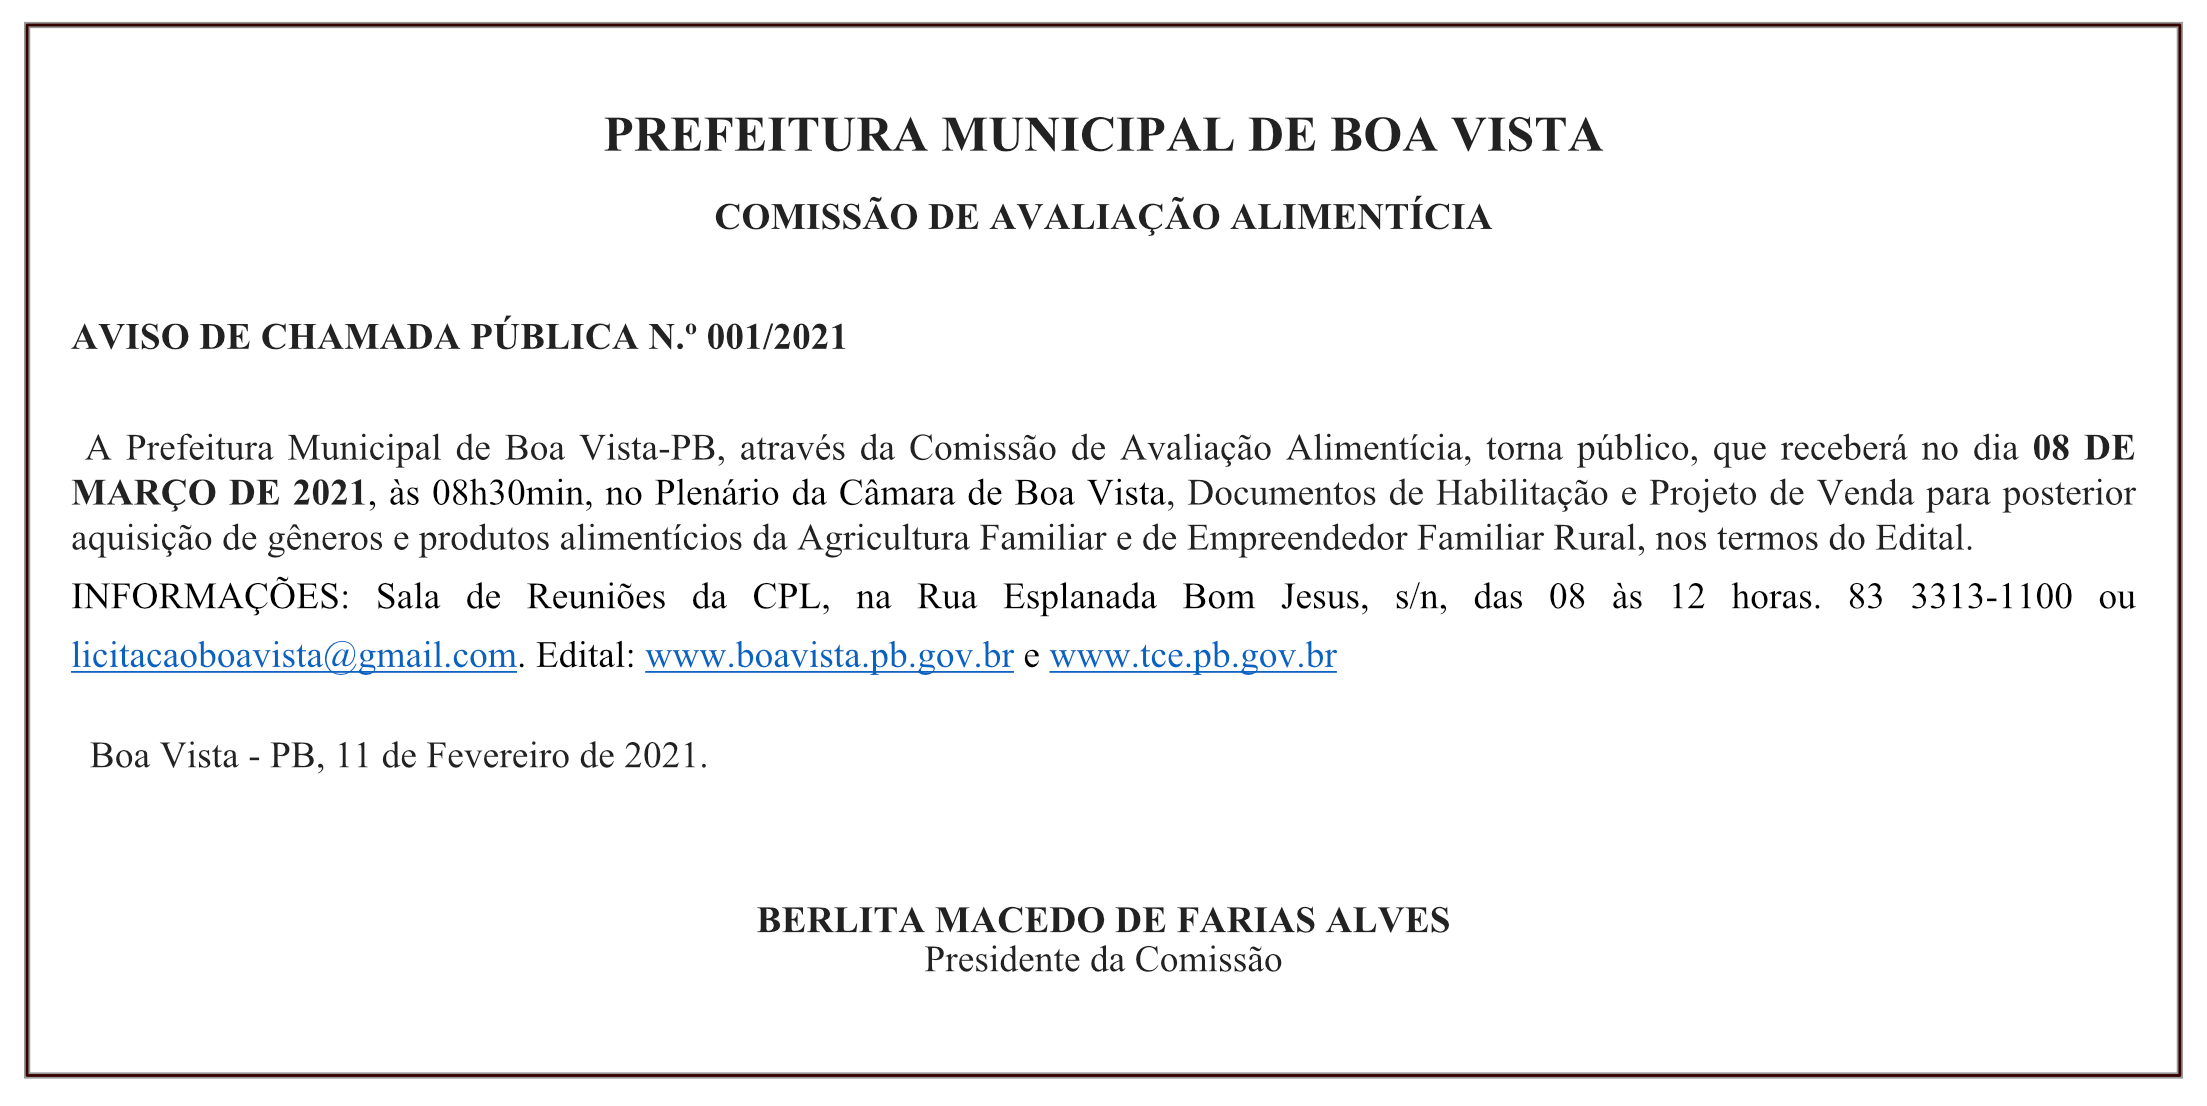 PREFEITURA MUNICIPAL DE BOA VISTA – COMISSÃO DE AVALIAÇÃO ALIMENTÍCIA – AVISO DE CHAMADA PÚBLICA N.º 001/2021